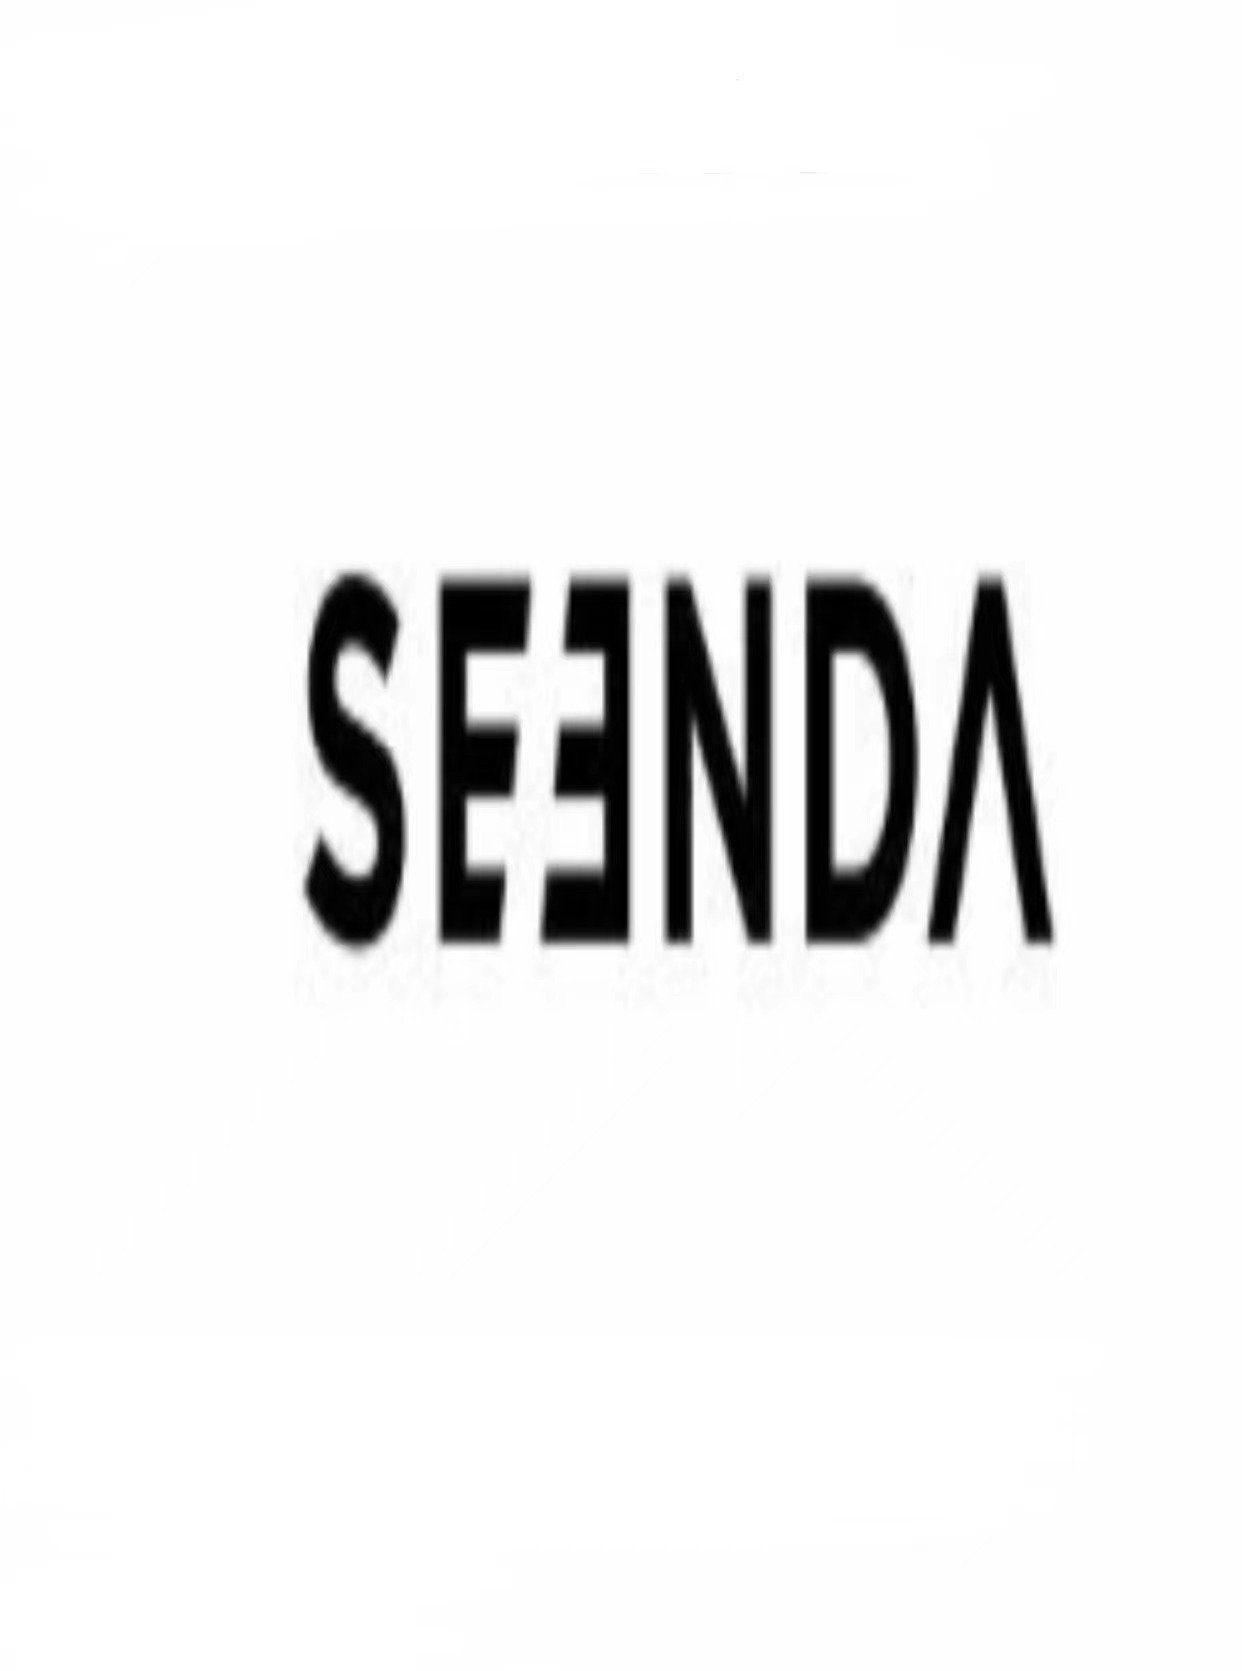 Seenda